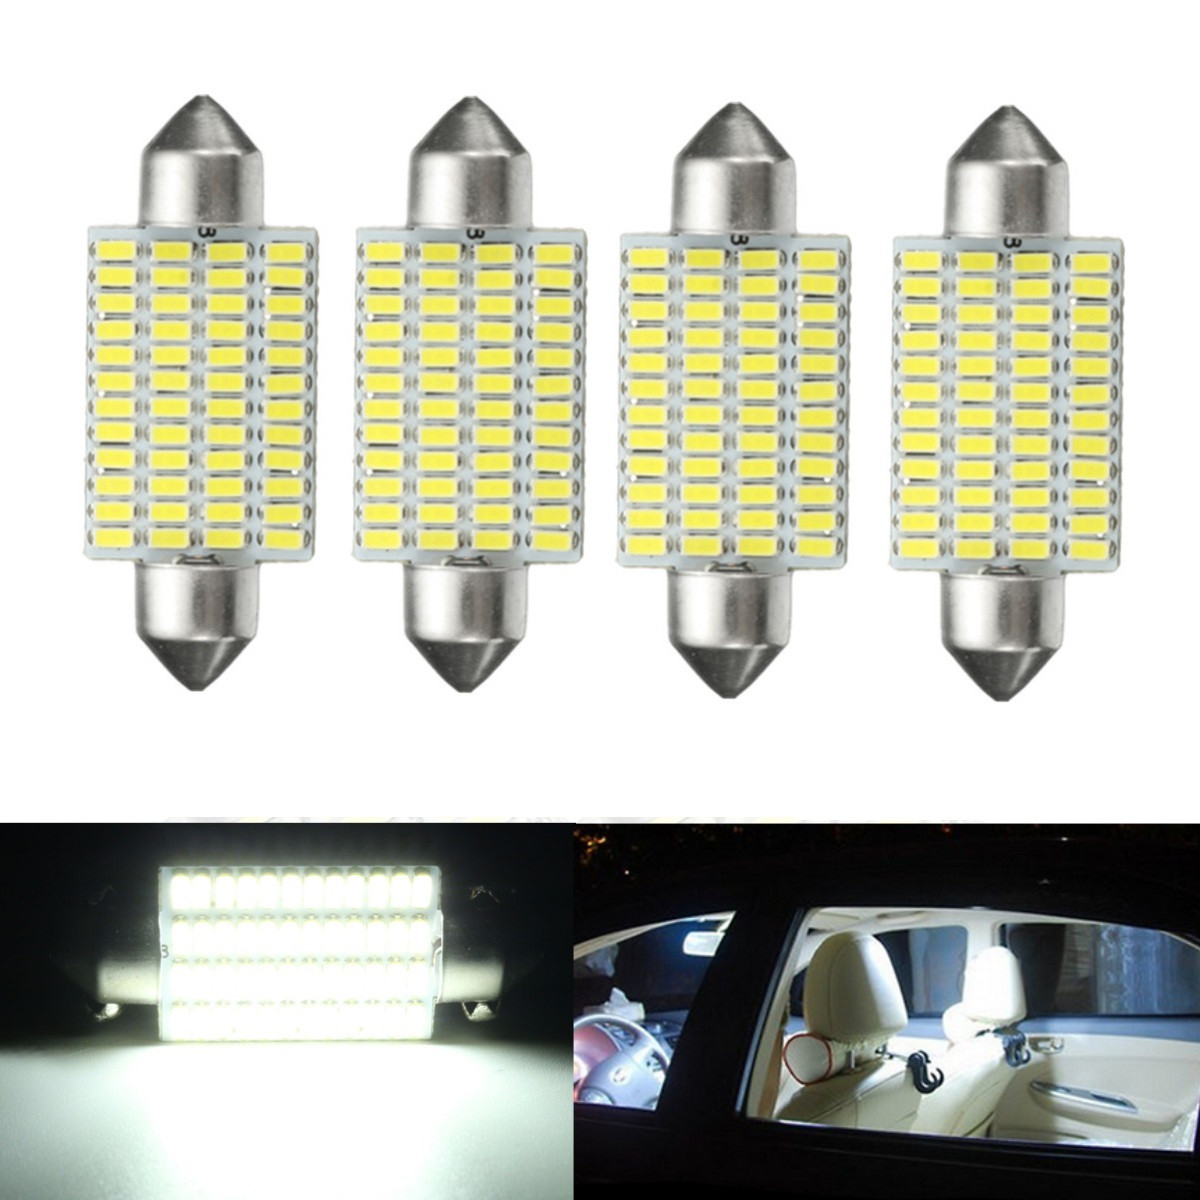 

4Pcs 3W 41mm Car Interior LED Festonn Readding Roof Light Lamp Bulb White